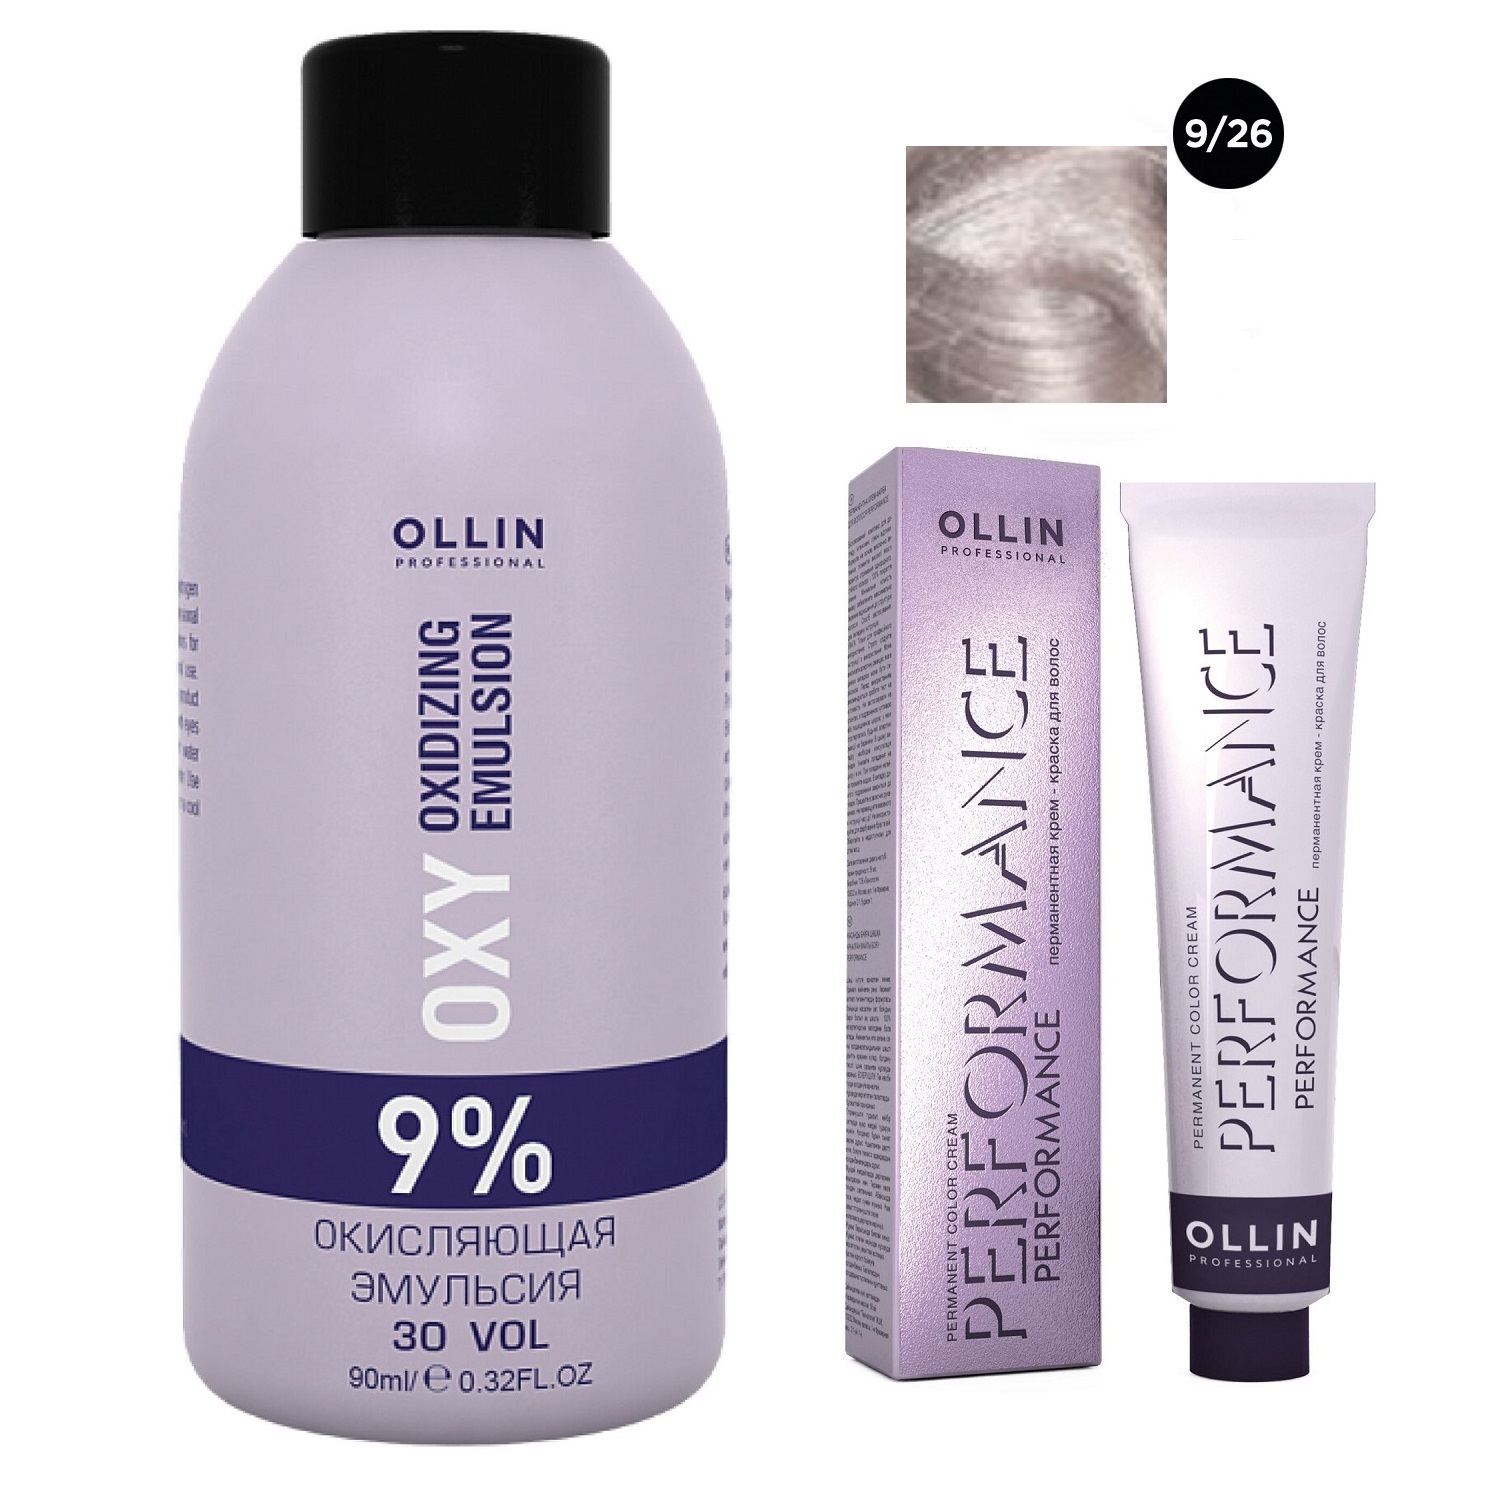 Ollin Professional Набор Перманентная крем-краска для волос Ollin Performance оттенок 9/26 блондин розовый 60 мл + Окисляющая эмульсия Oxy 9% 90 мл (Ollin Professional, Performance) ollin окисляющая эмульсия 9% 30vol performance oxy 1000 мл